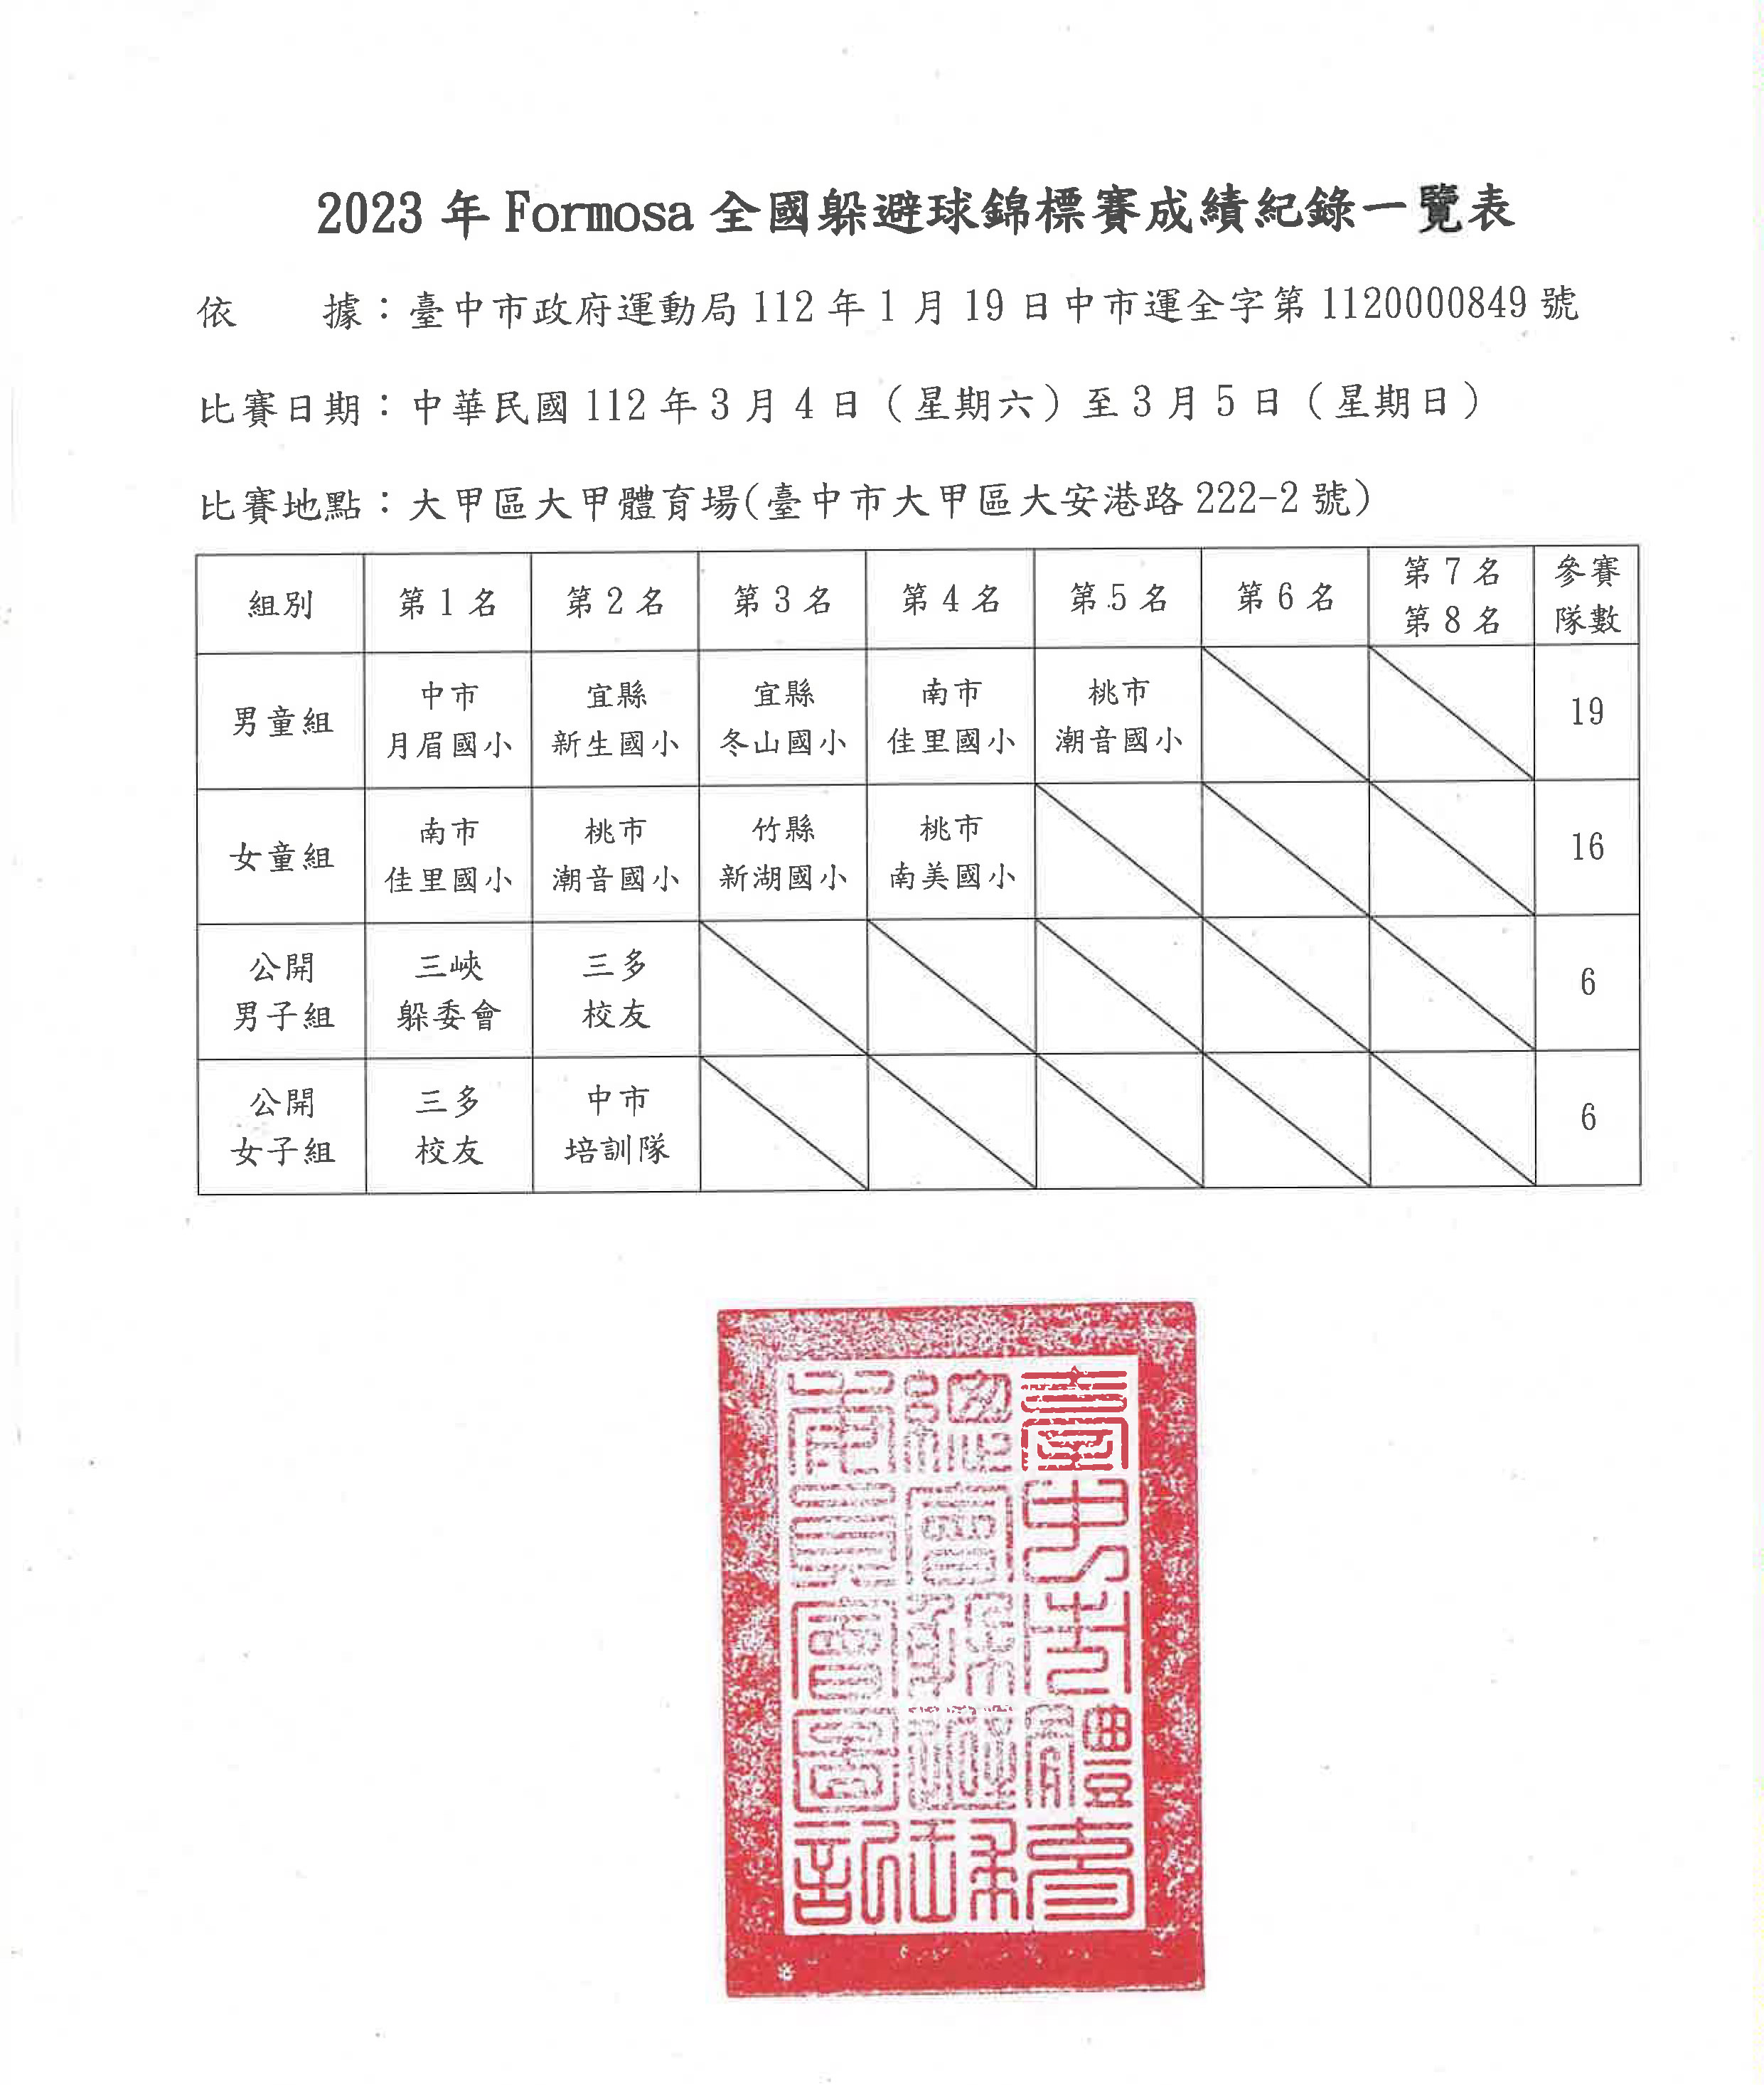 2023年Formosa全國躲避球錦標賽 賽成績一覽表